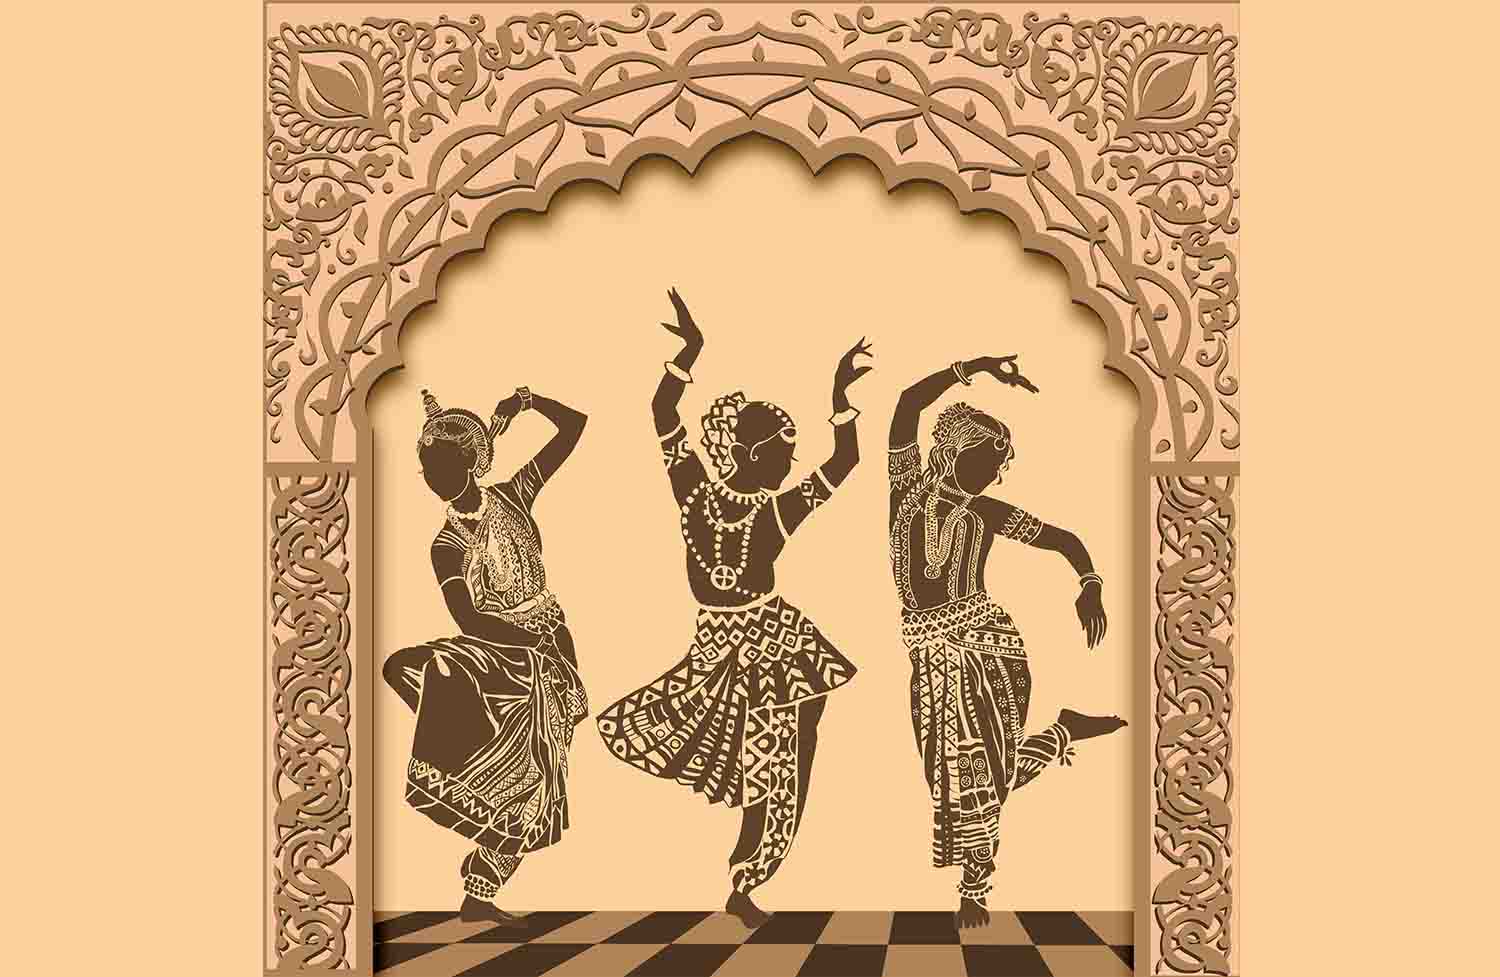 Dances of India 3